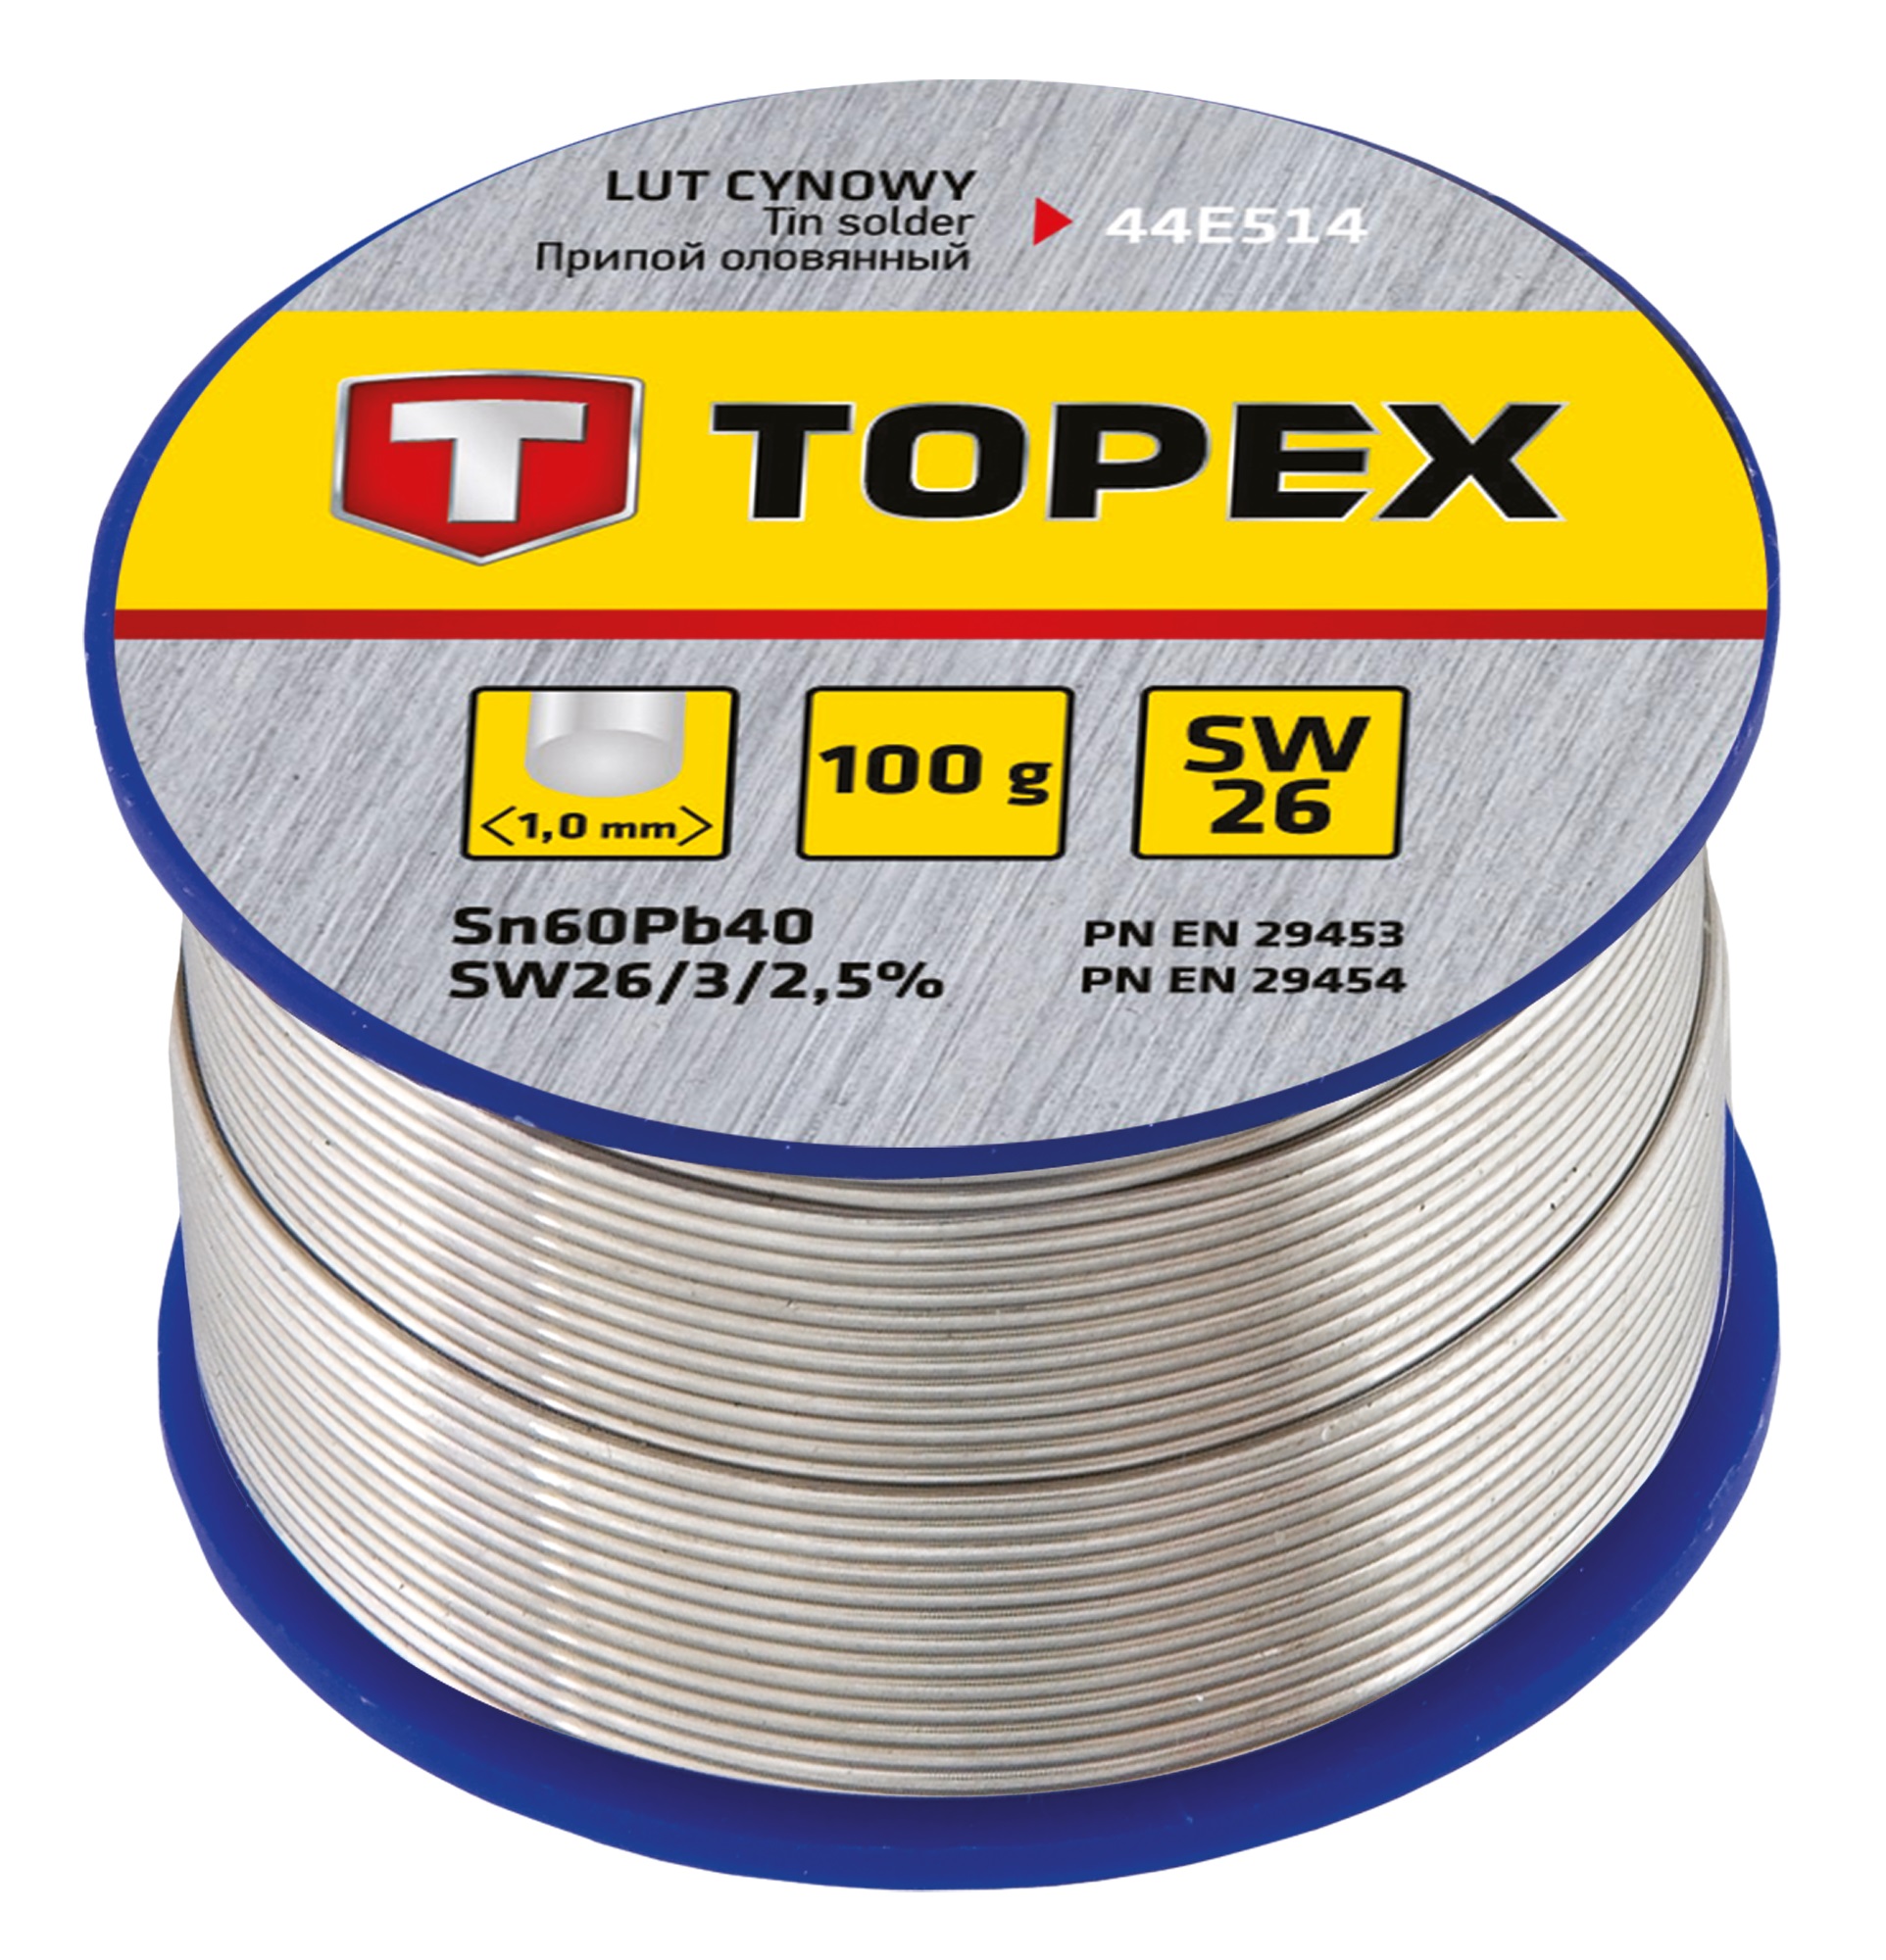 Припой для пайки Topex 44E514 в интернет-магазине, главное фото